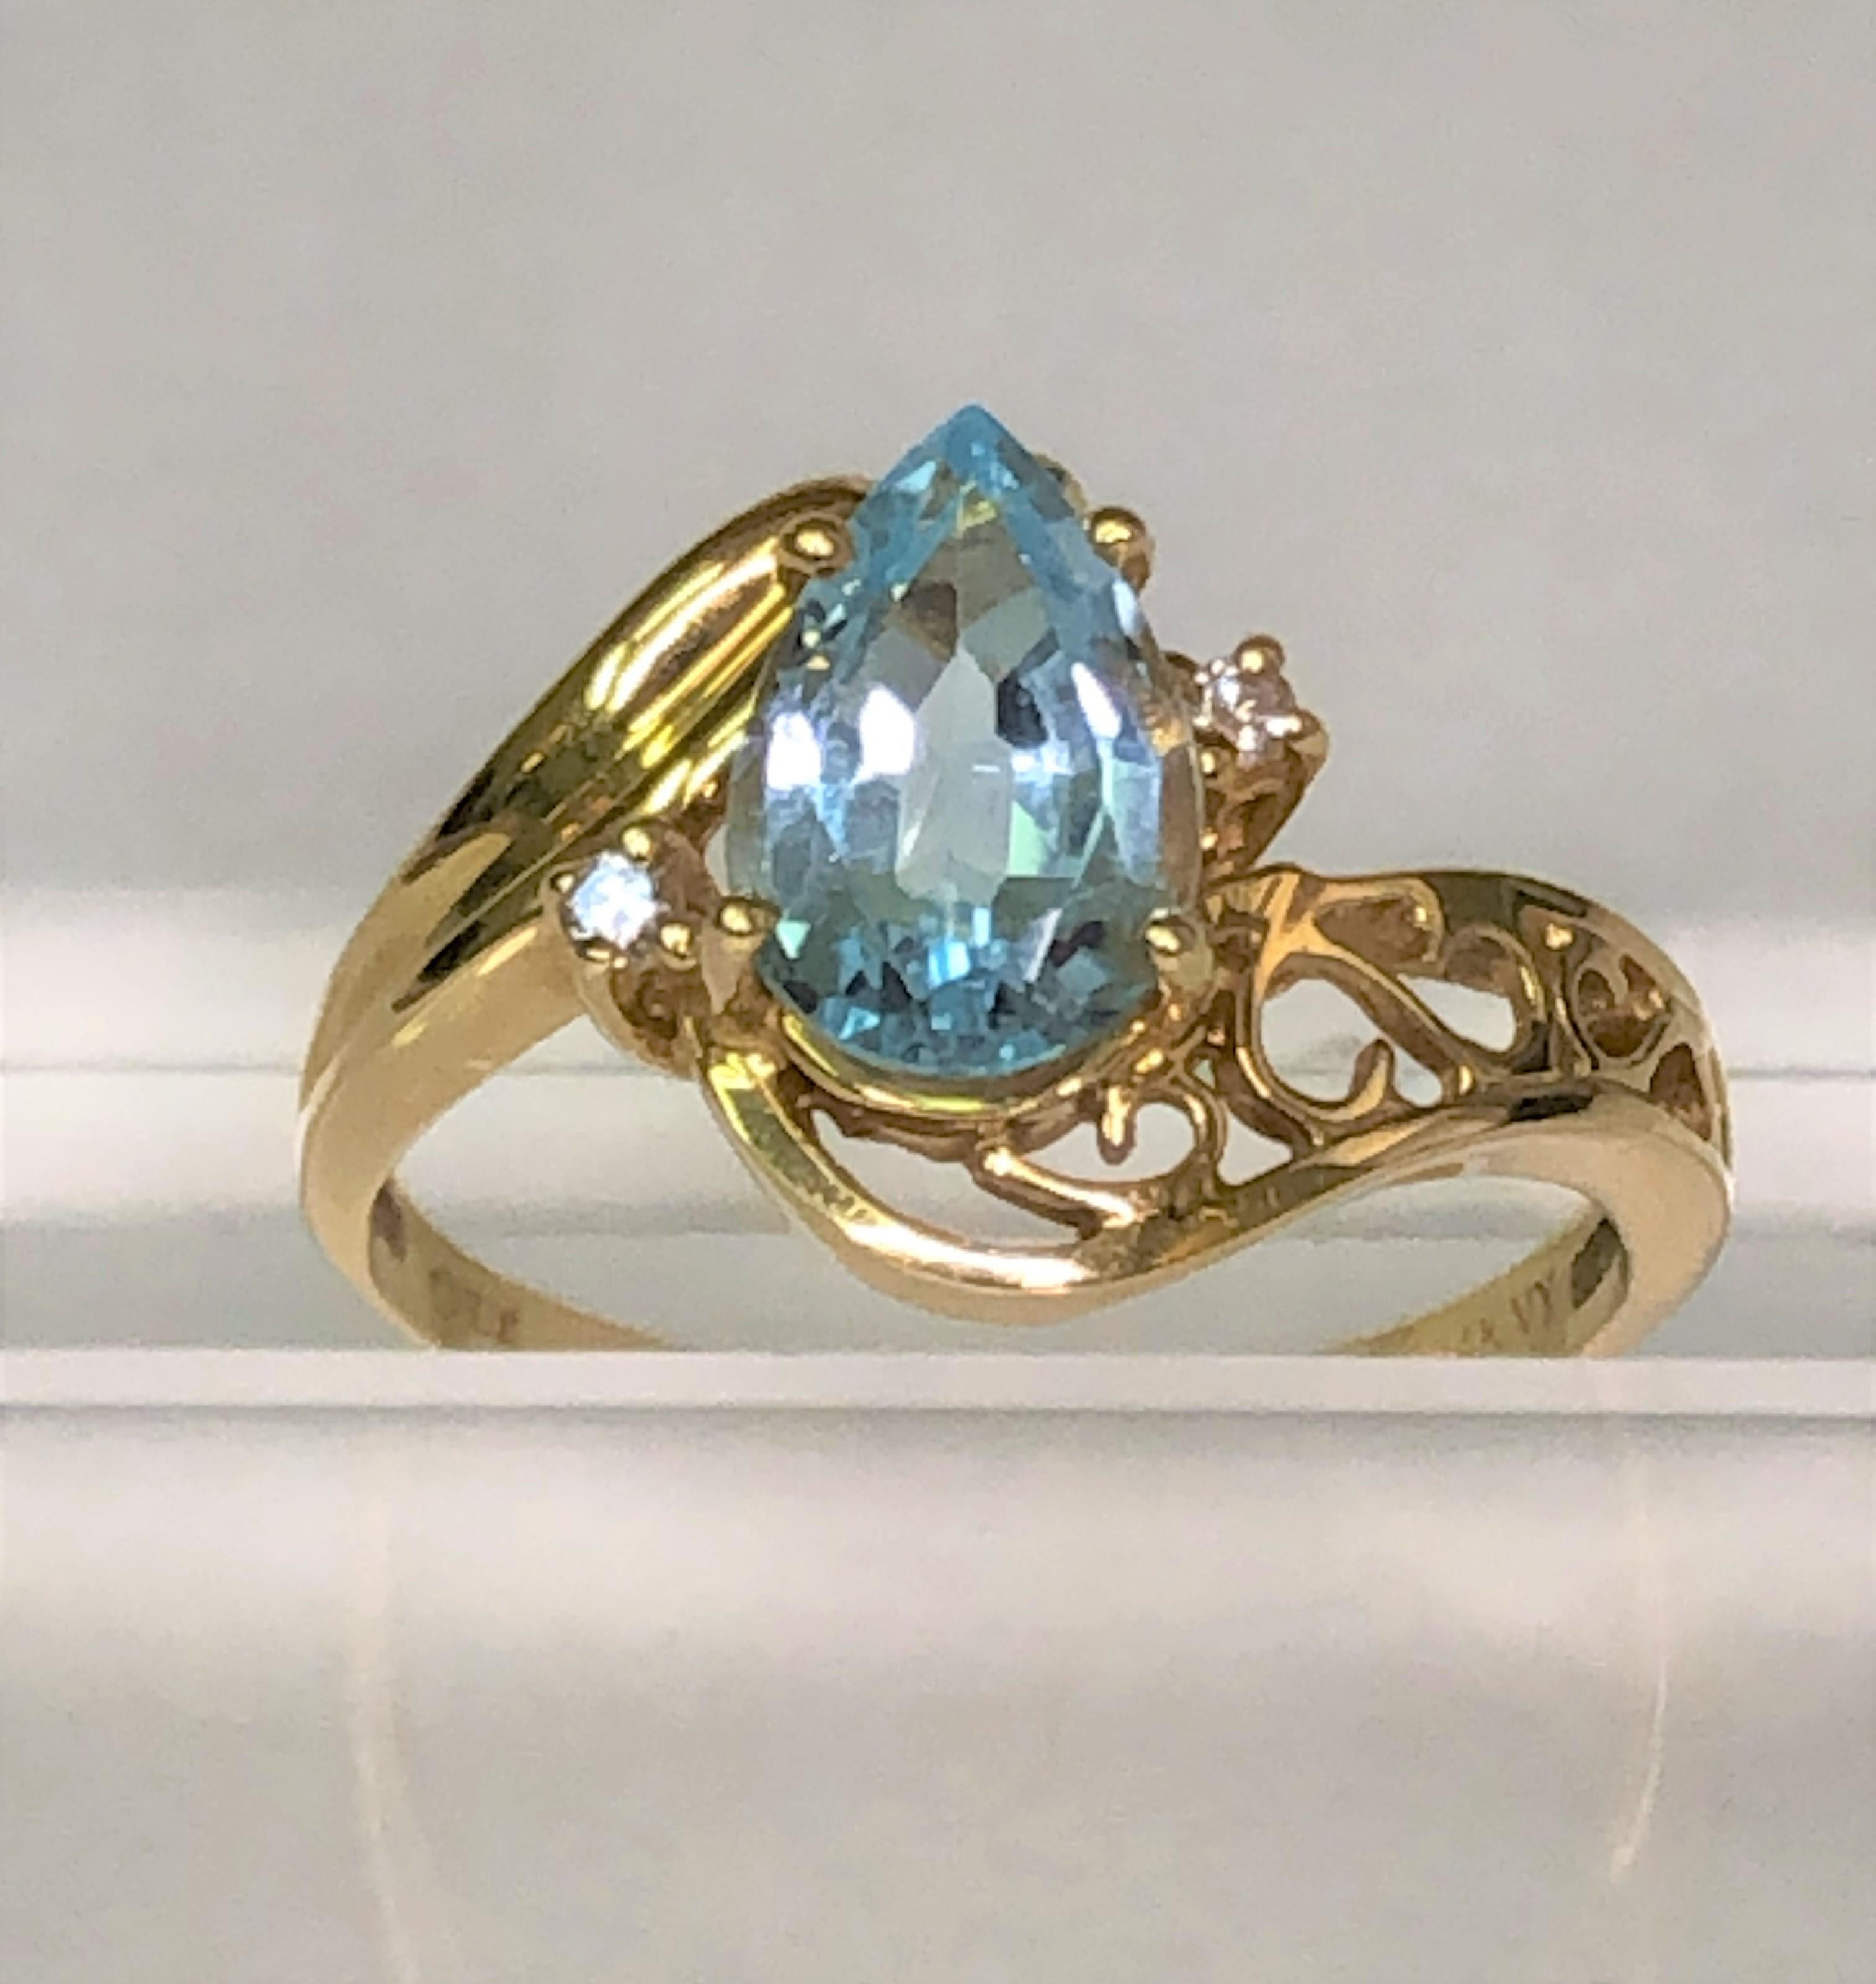 Cette bague classique conviendra à tout le monde !  
monture décorative en or jaune 14 carats avec topaze bleue taille poire et deux diamants ronds.
Magnifique topaze bleue en forme de poire sertie à la broche.  Environ 9 mm x 6 mm.
Deux diamants